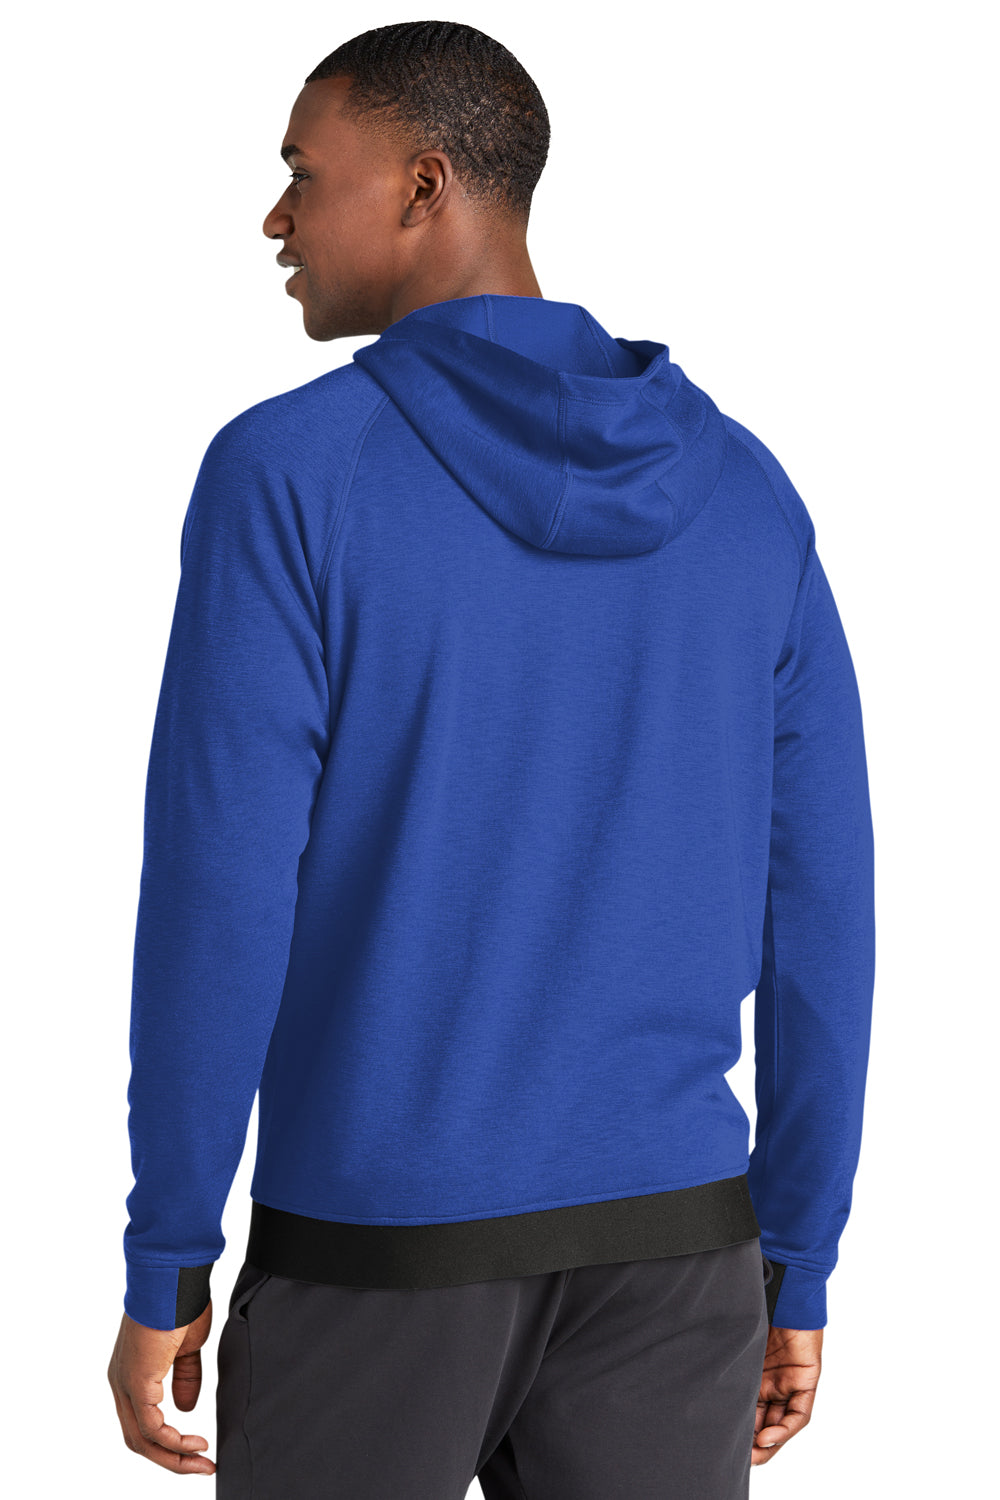 Sport-Tek ST570 Strive PosiCharge Full Zip Hooded Sweatshirt Hoodie True Royal Blue Back